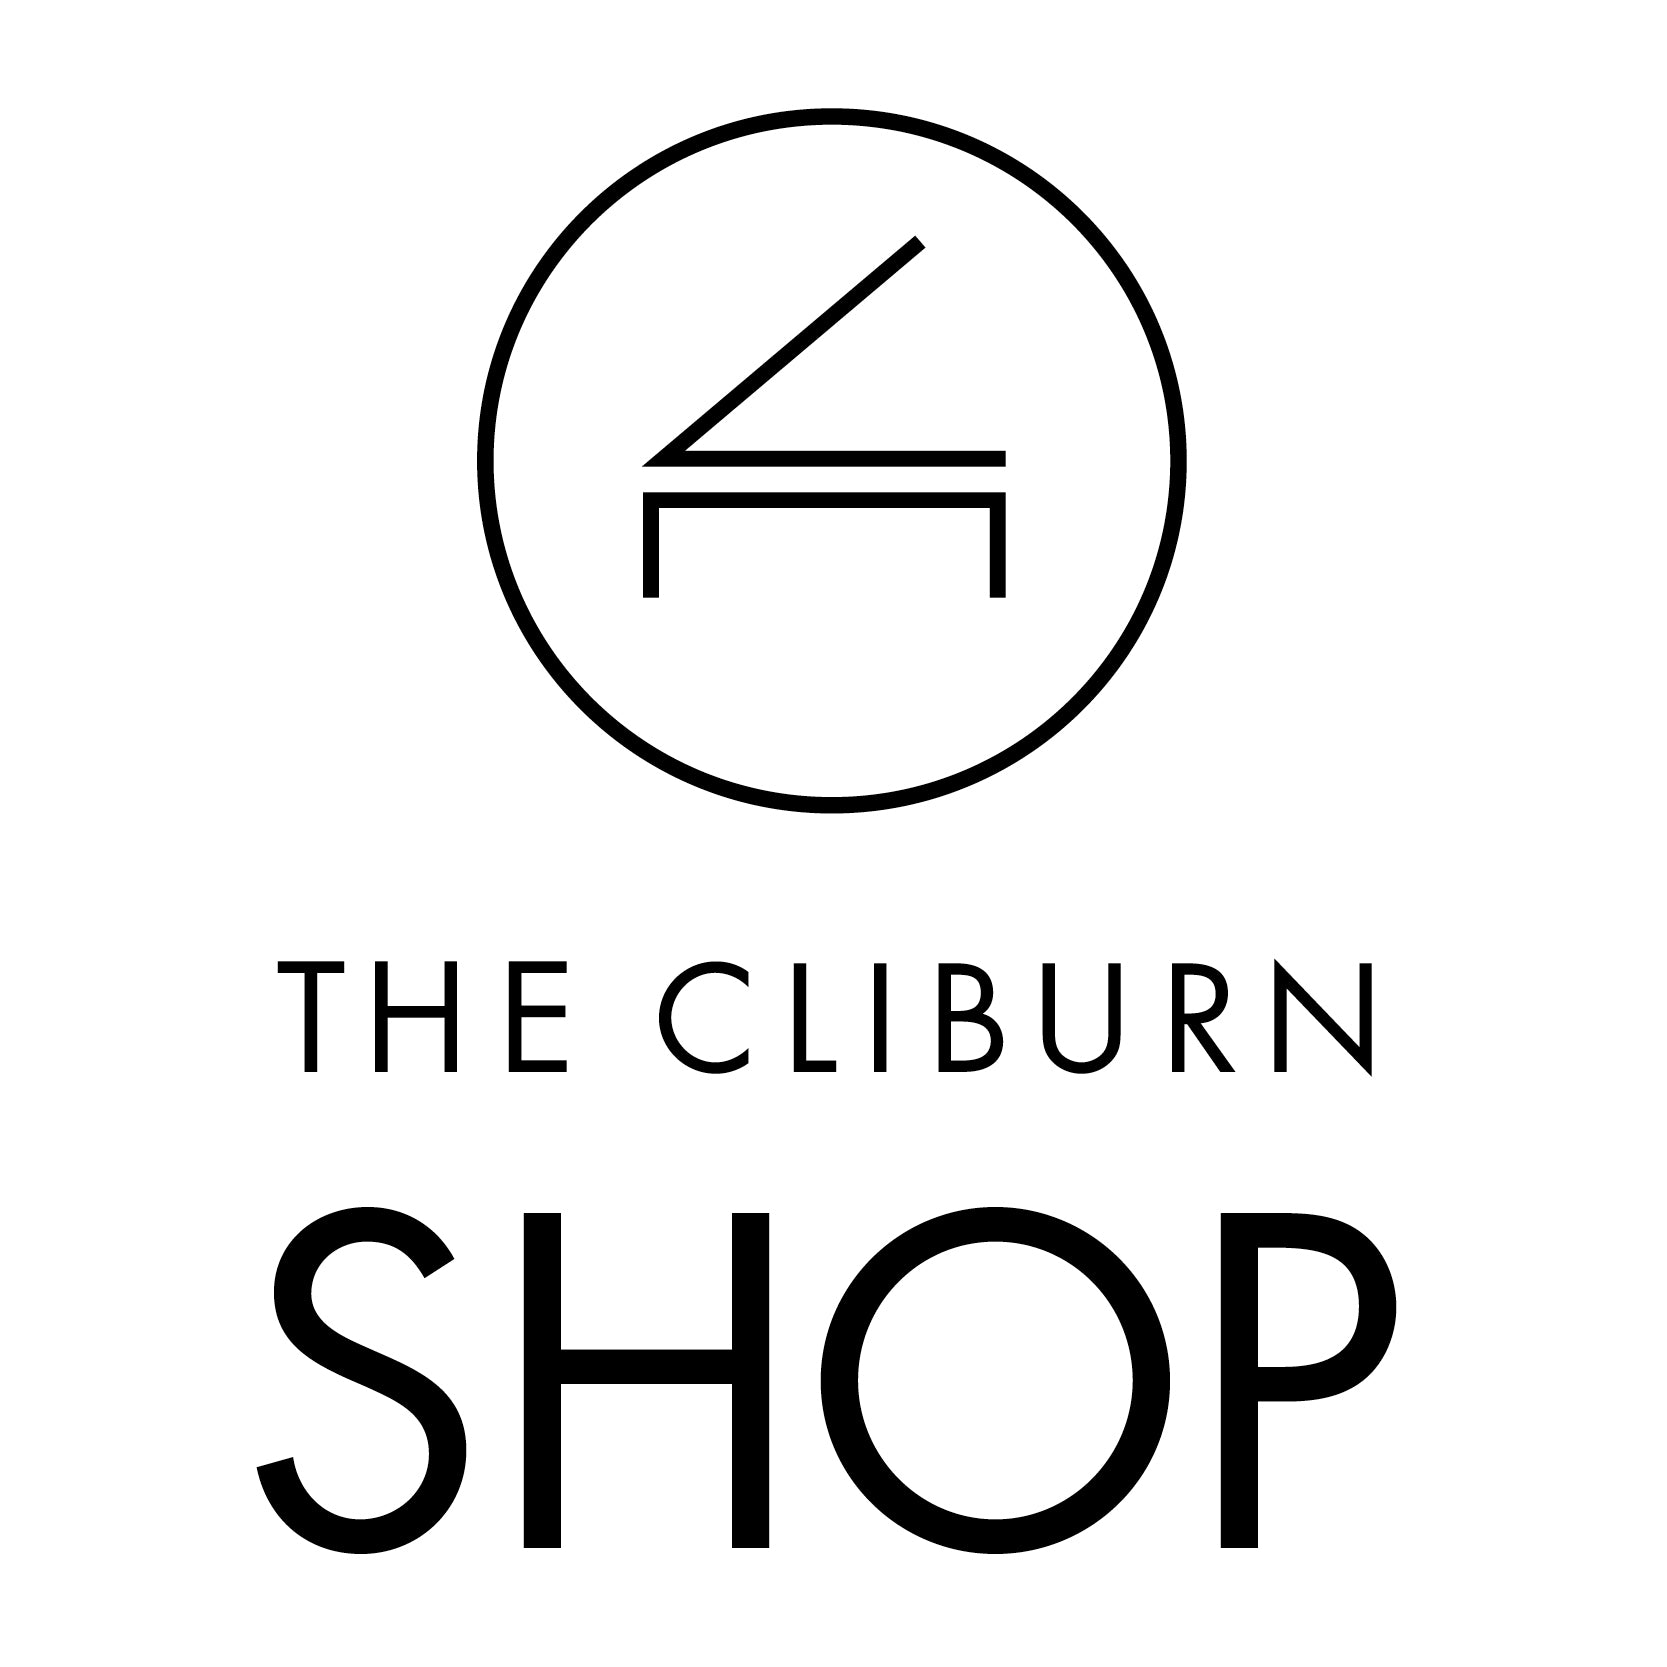 The Cliburn Shop